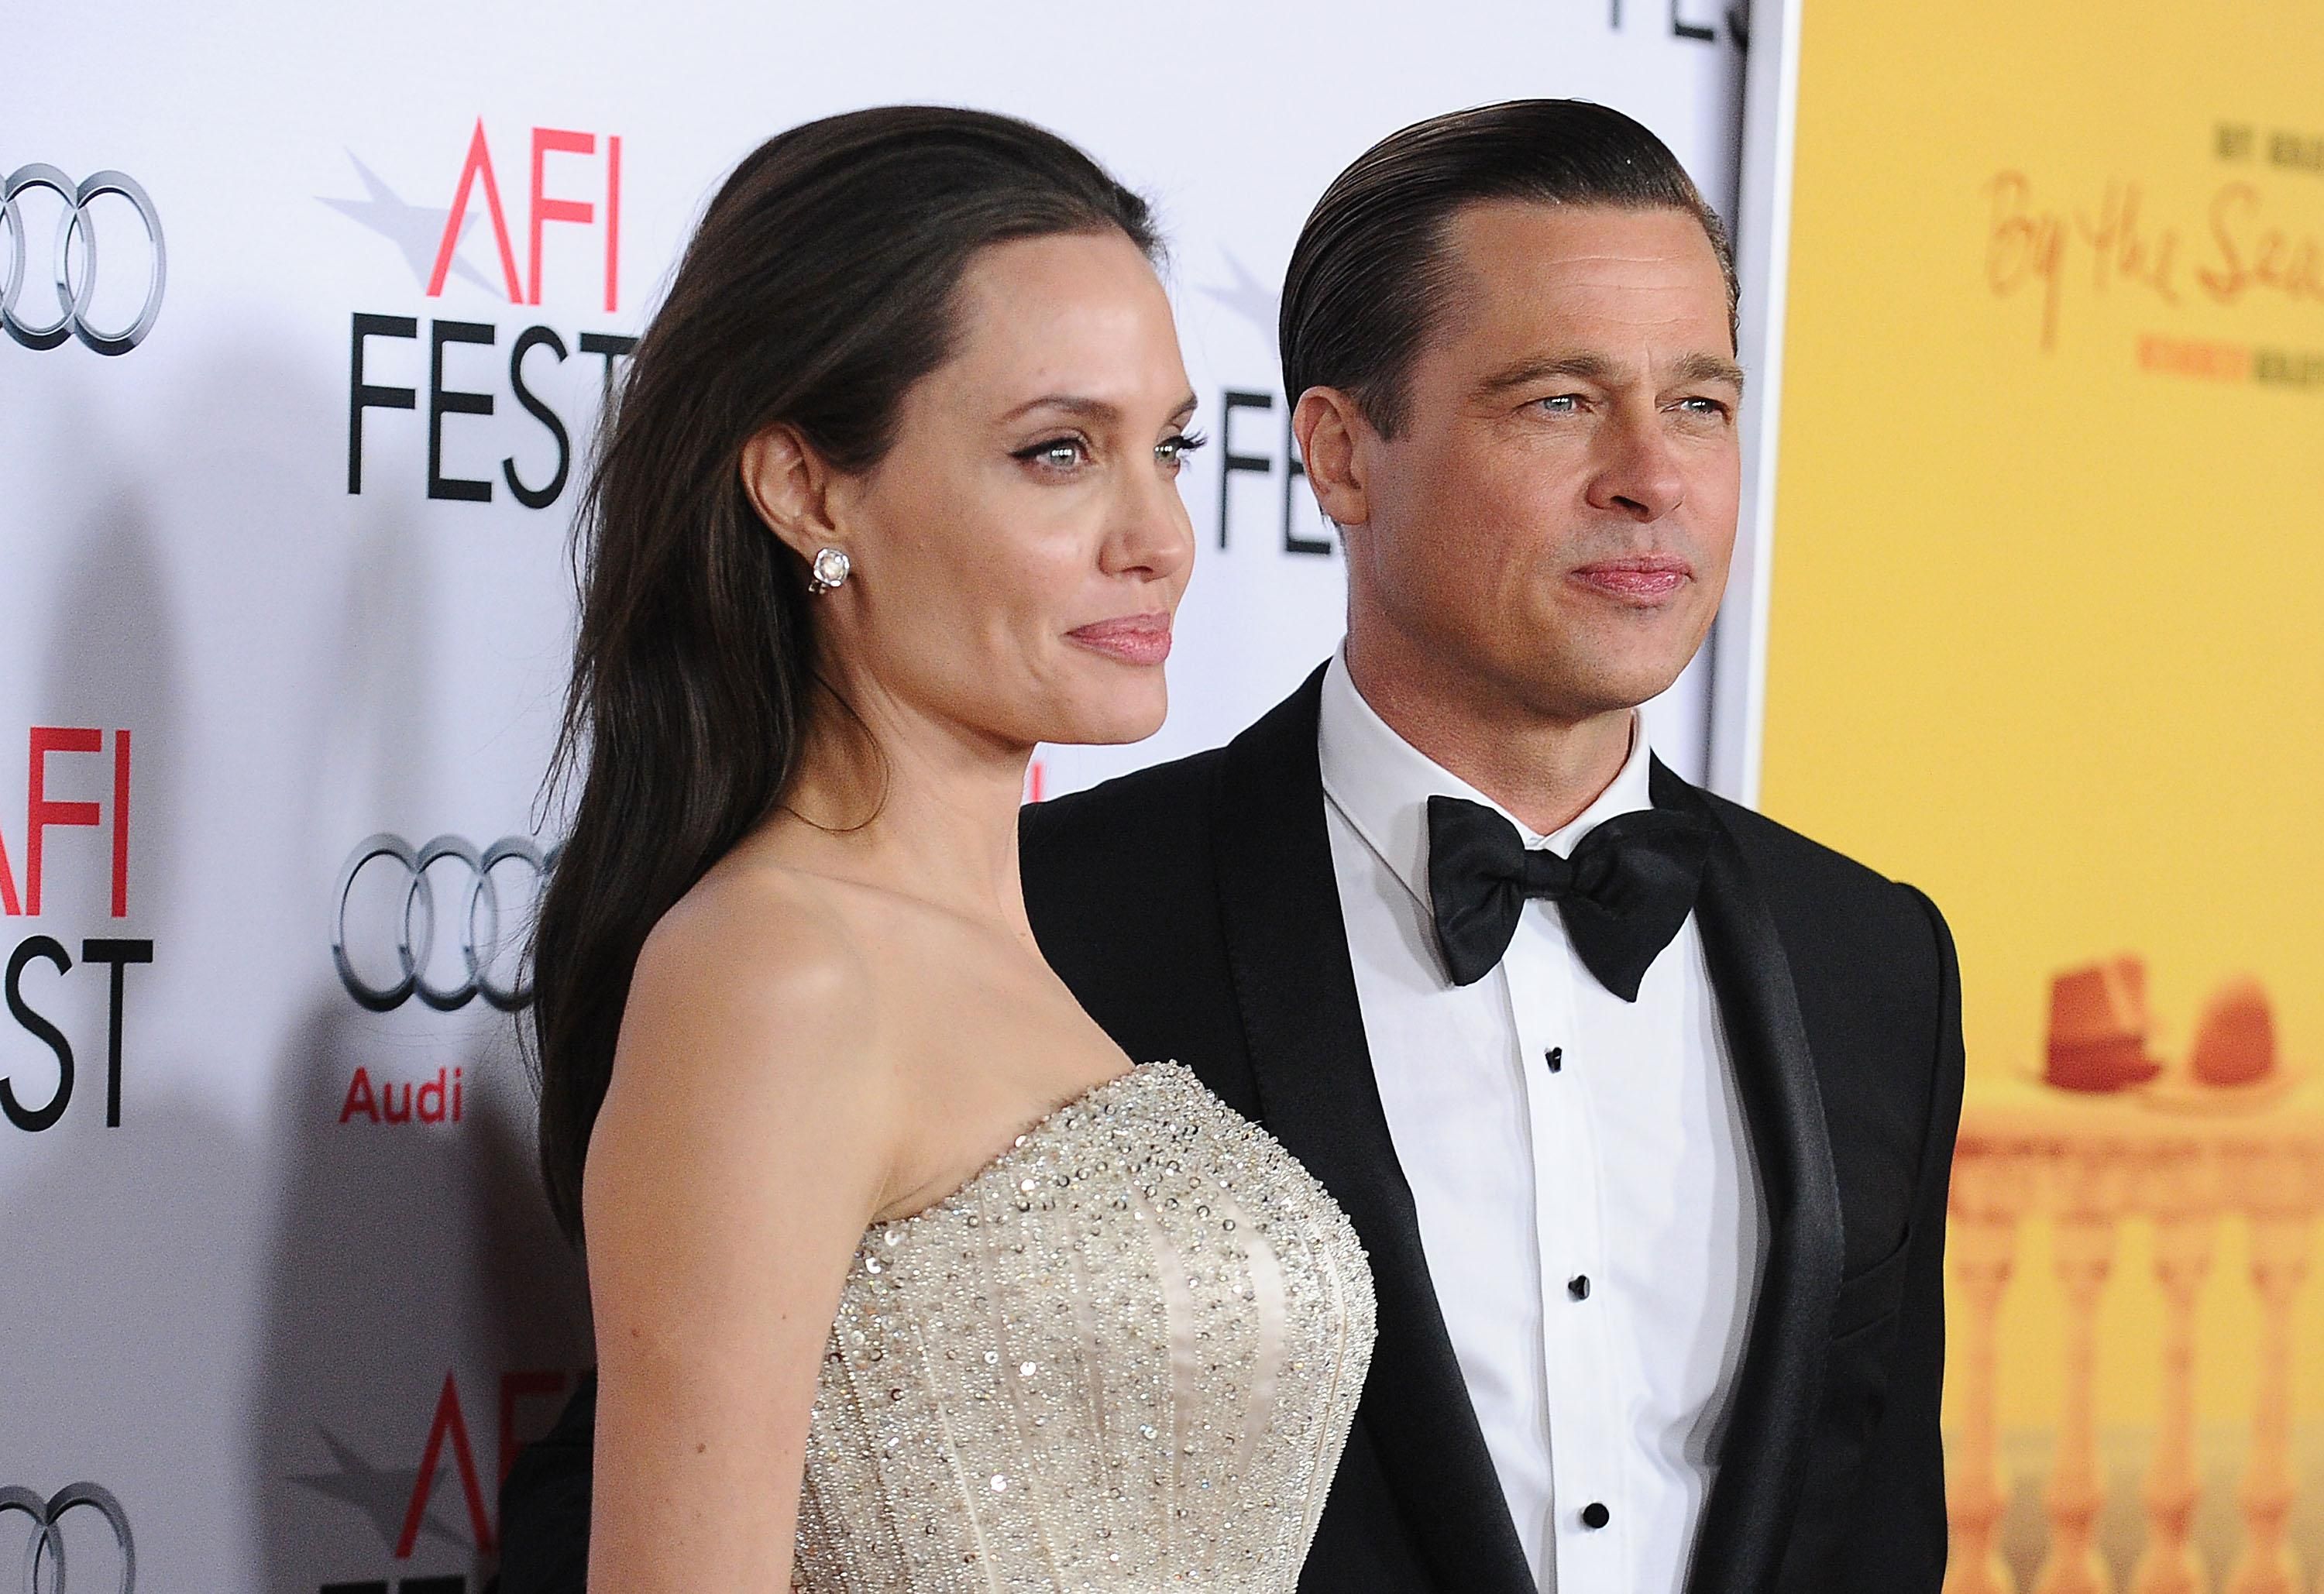 "Брэд перевернул жизнь с ног на голову": Анджелина Джоли не может простить экс-мужа